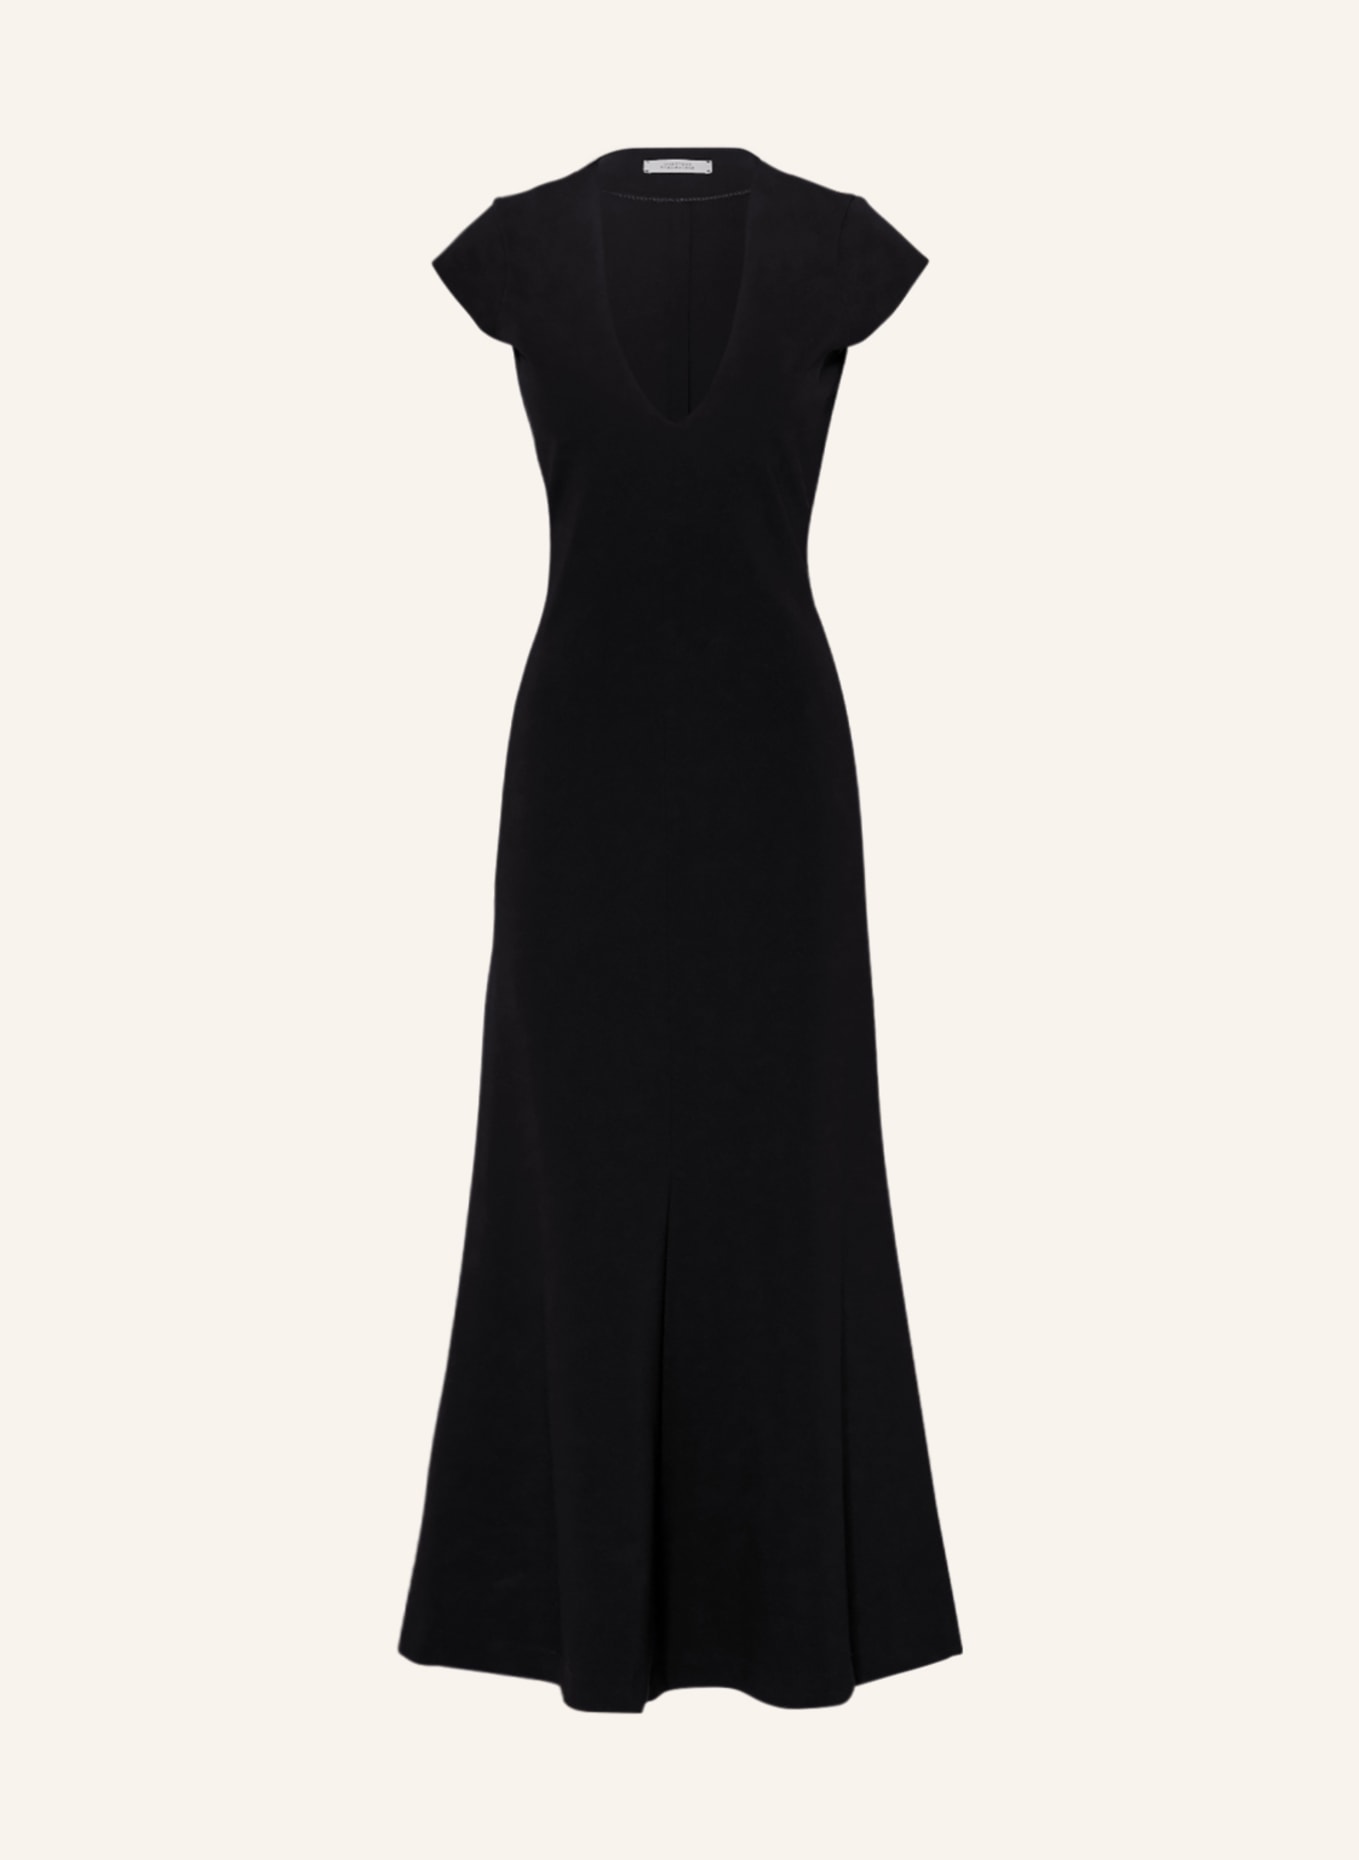 DOROTHEE SCHUMACHER Kleid, Farbe: SCHWARZ (Bild 1)